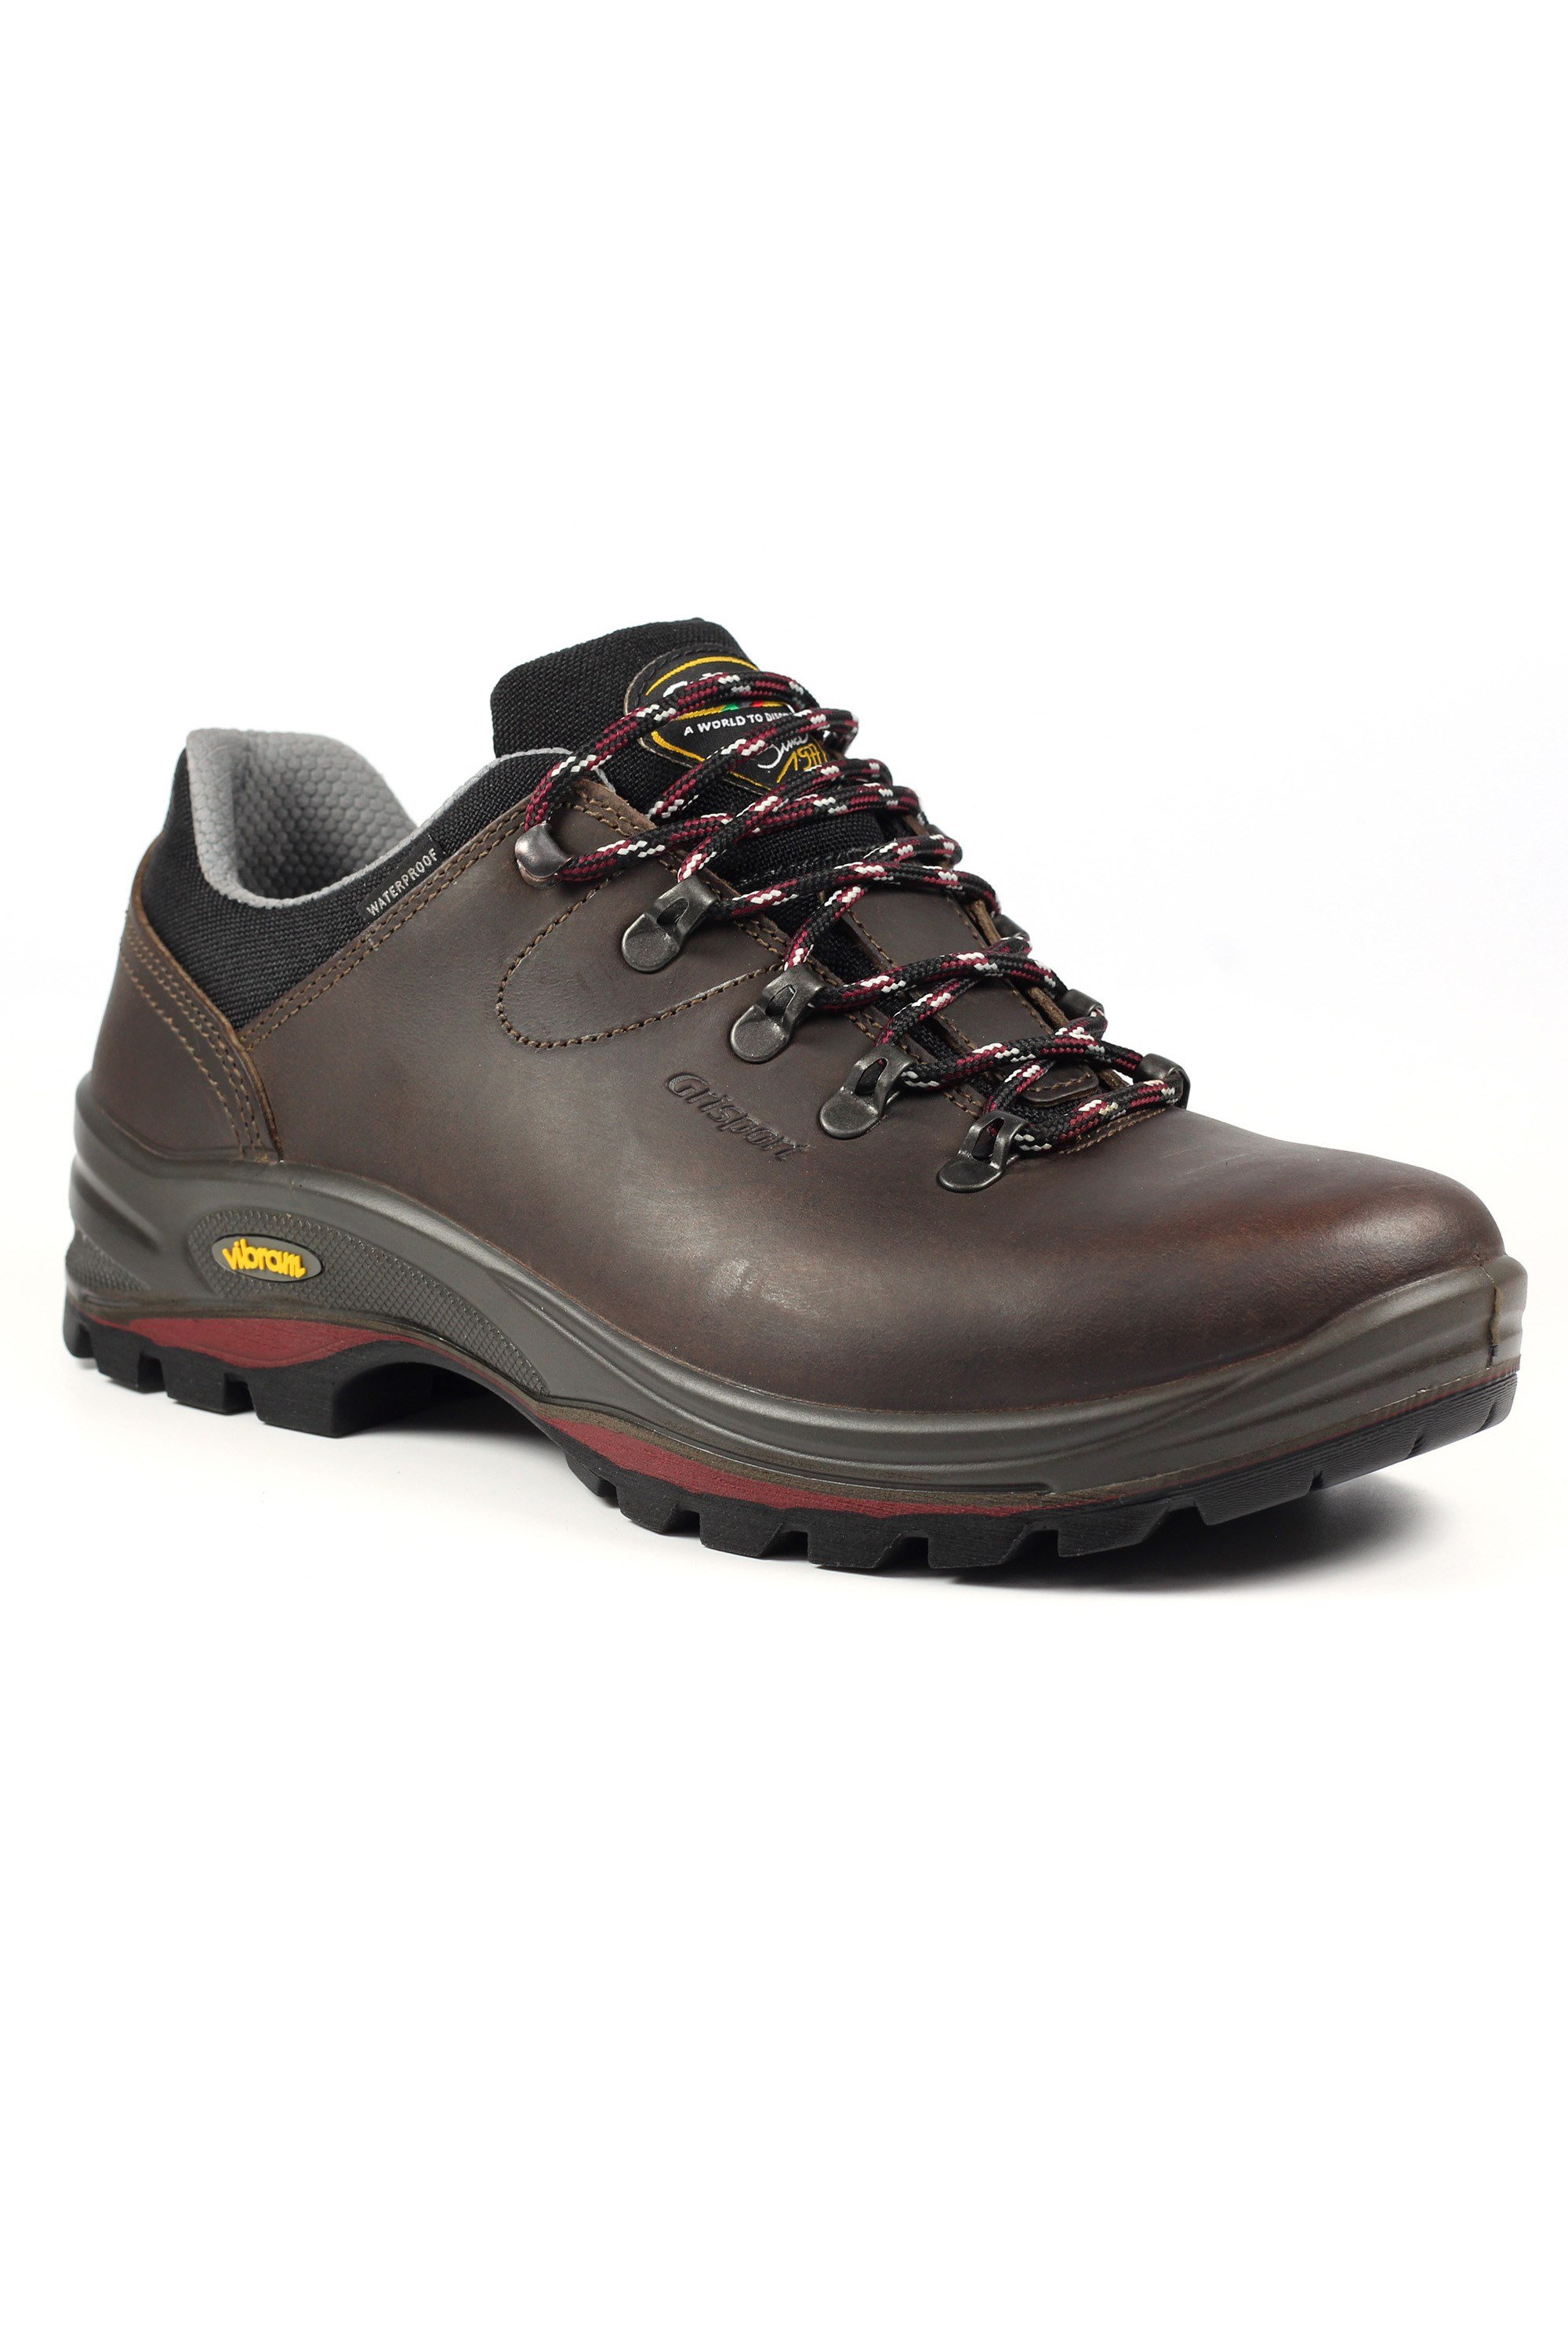 Dartmoor GTX Mens Waterproof Trekking Shoe -